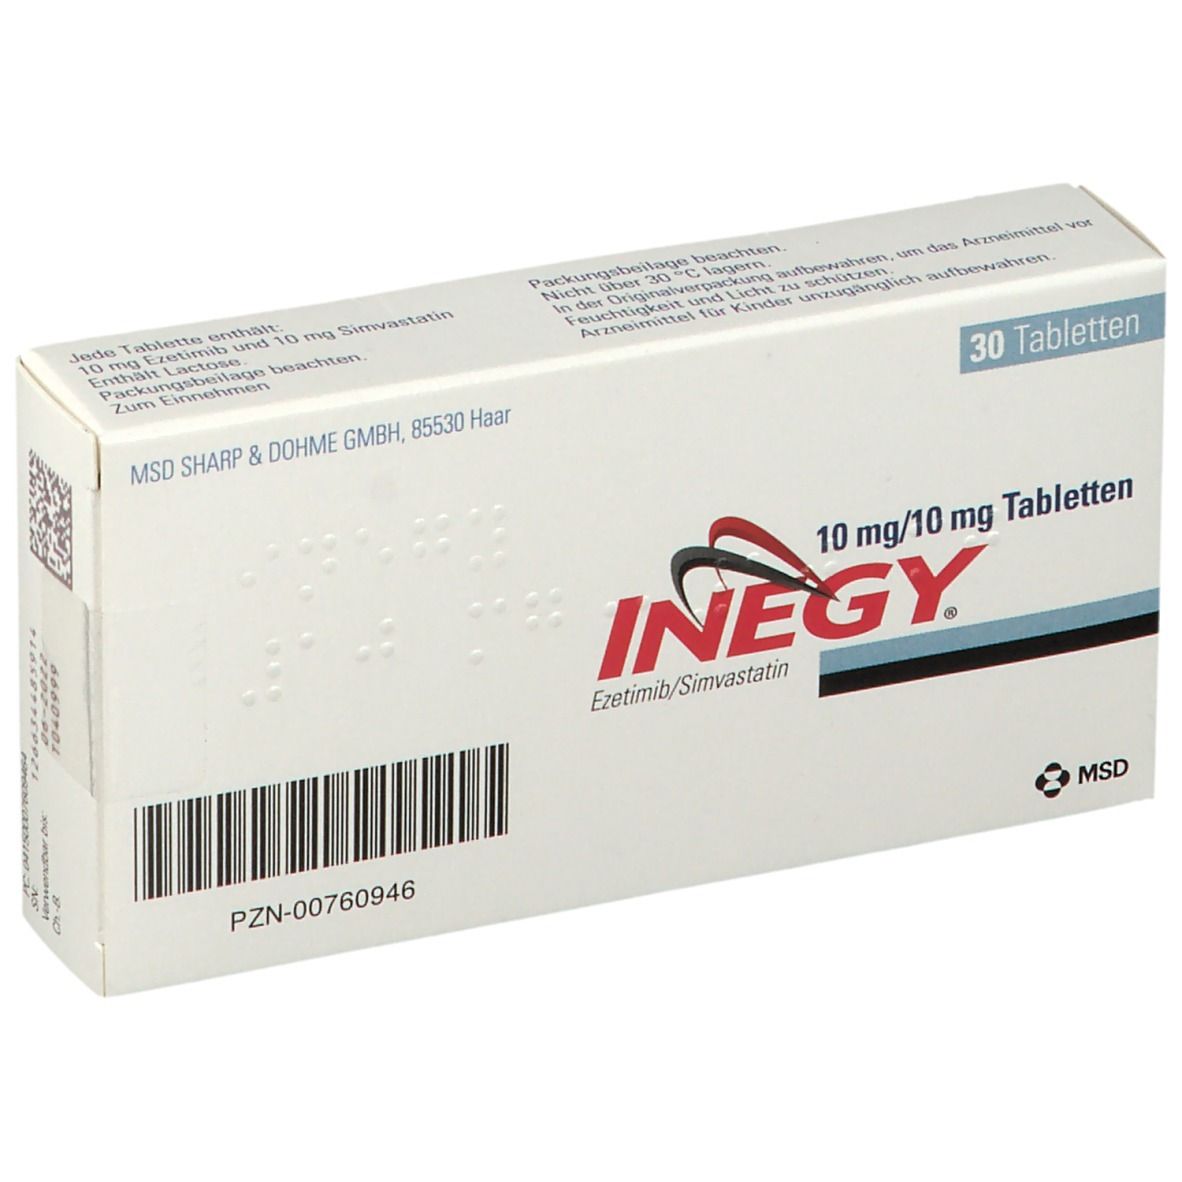 INEGY® 10 mg/10 mg